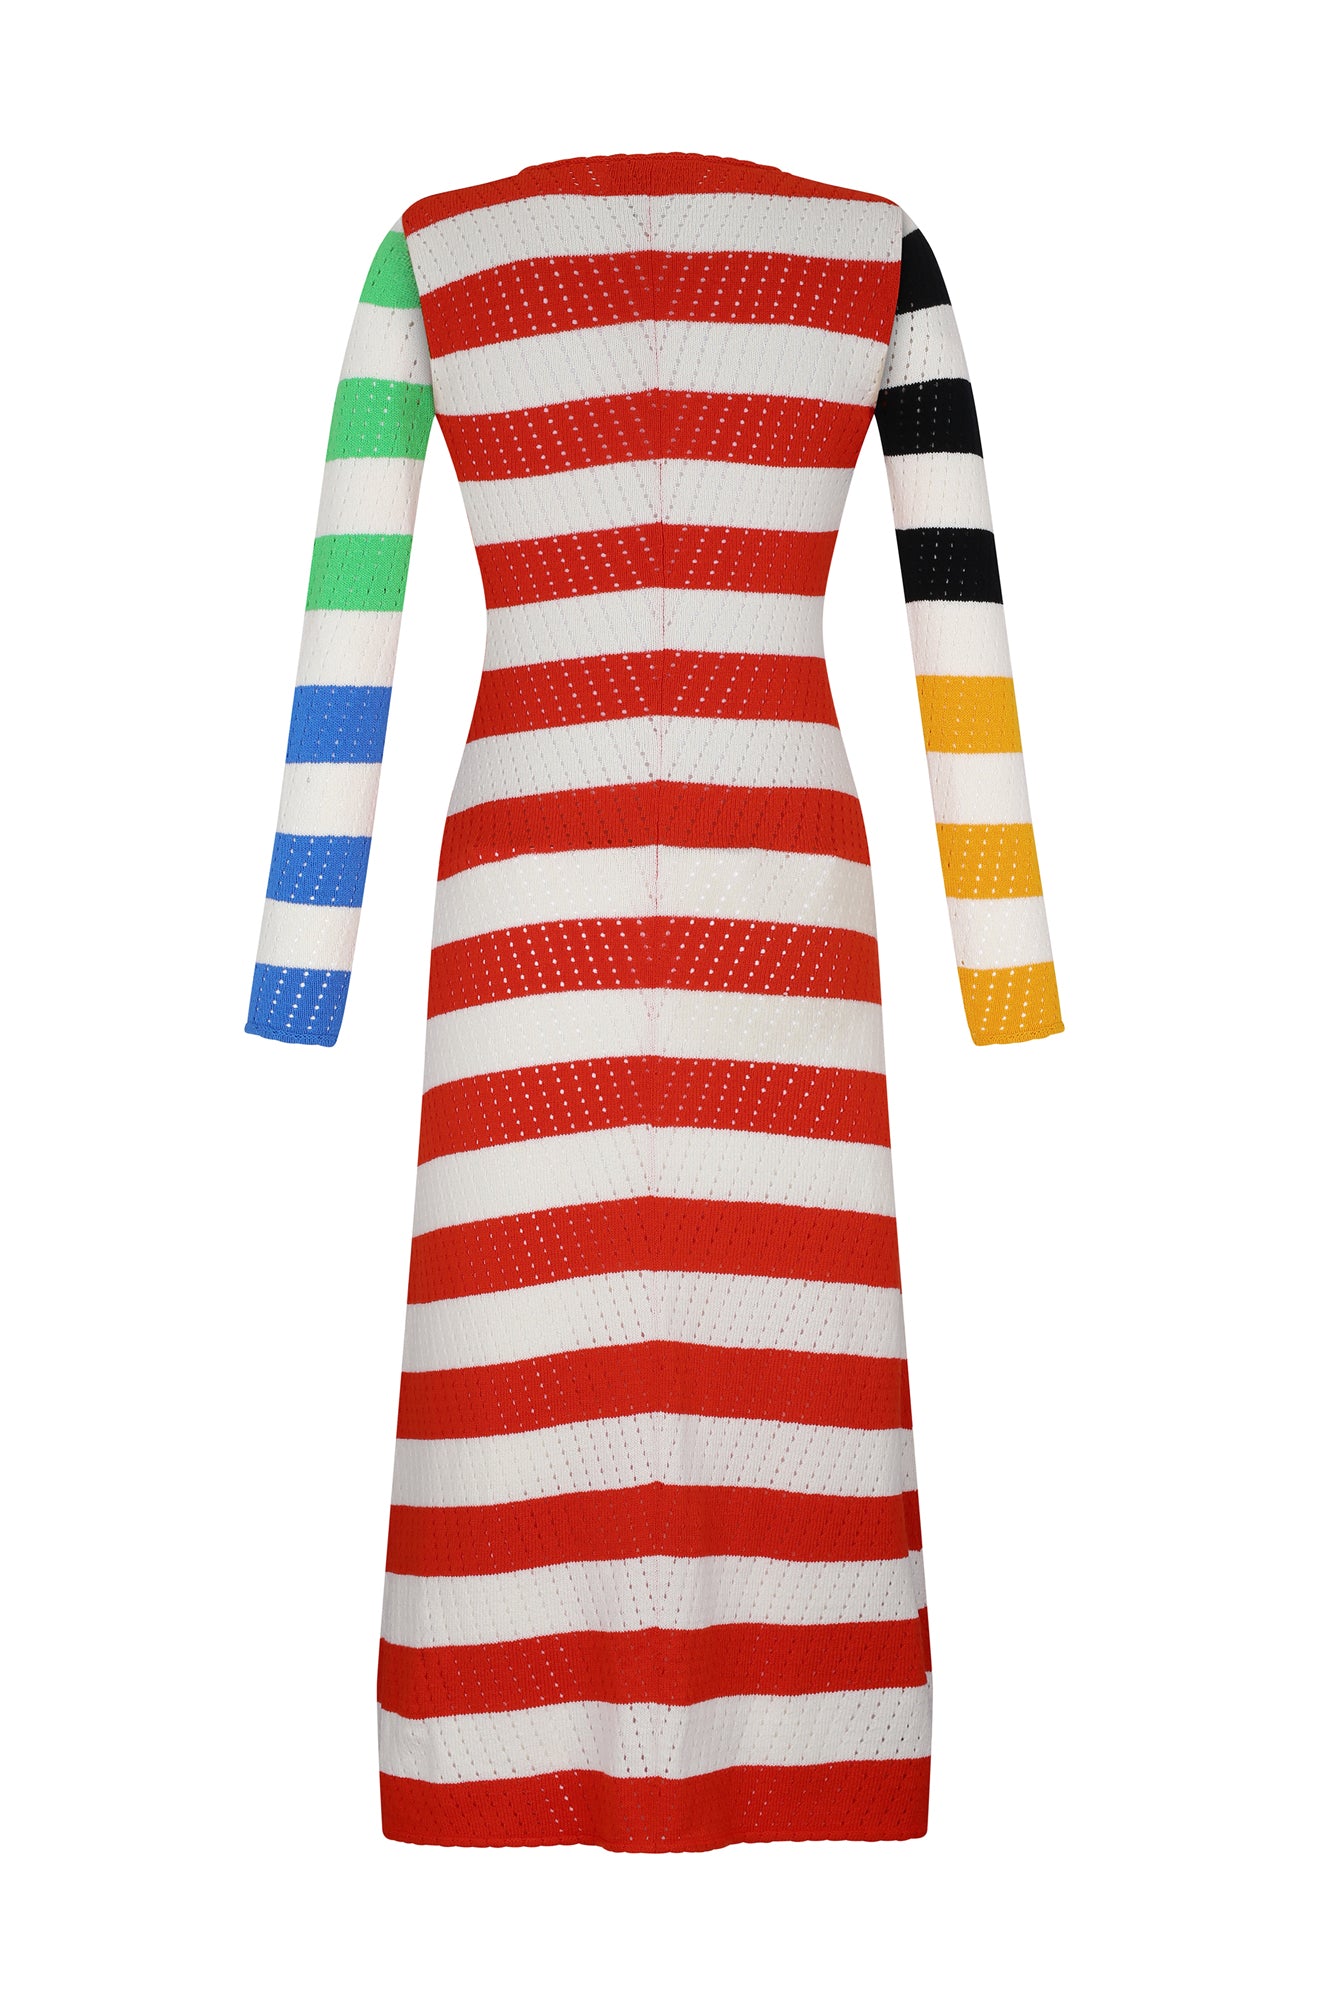 Rocoto Dress in Multicolor Stripes